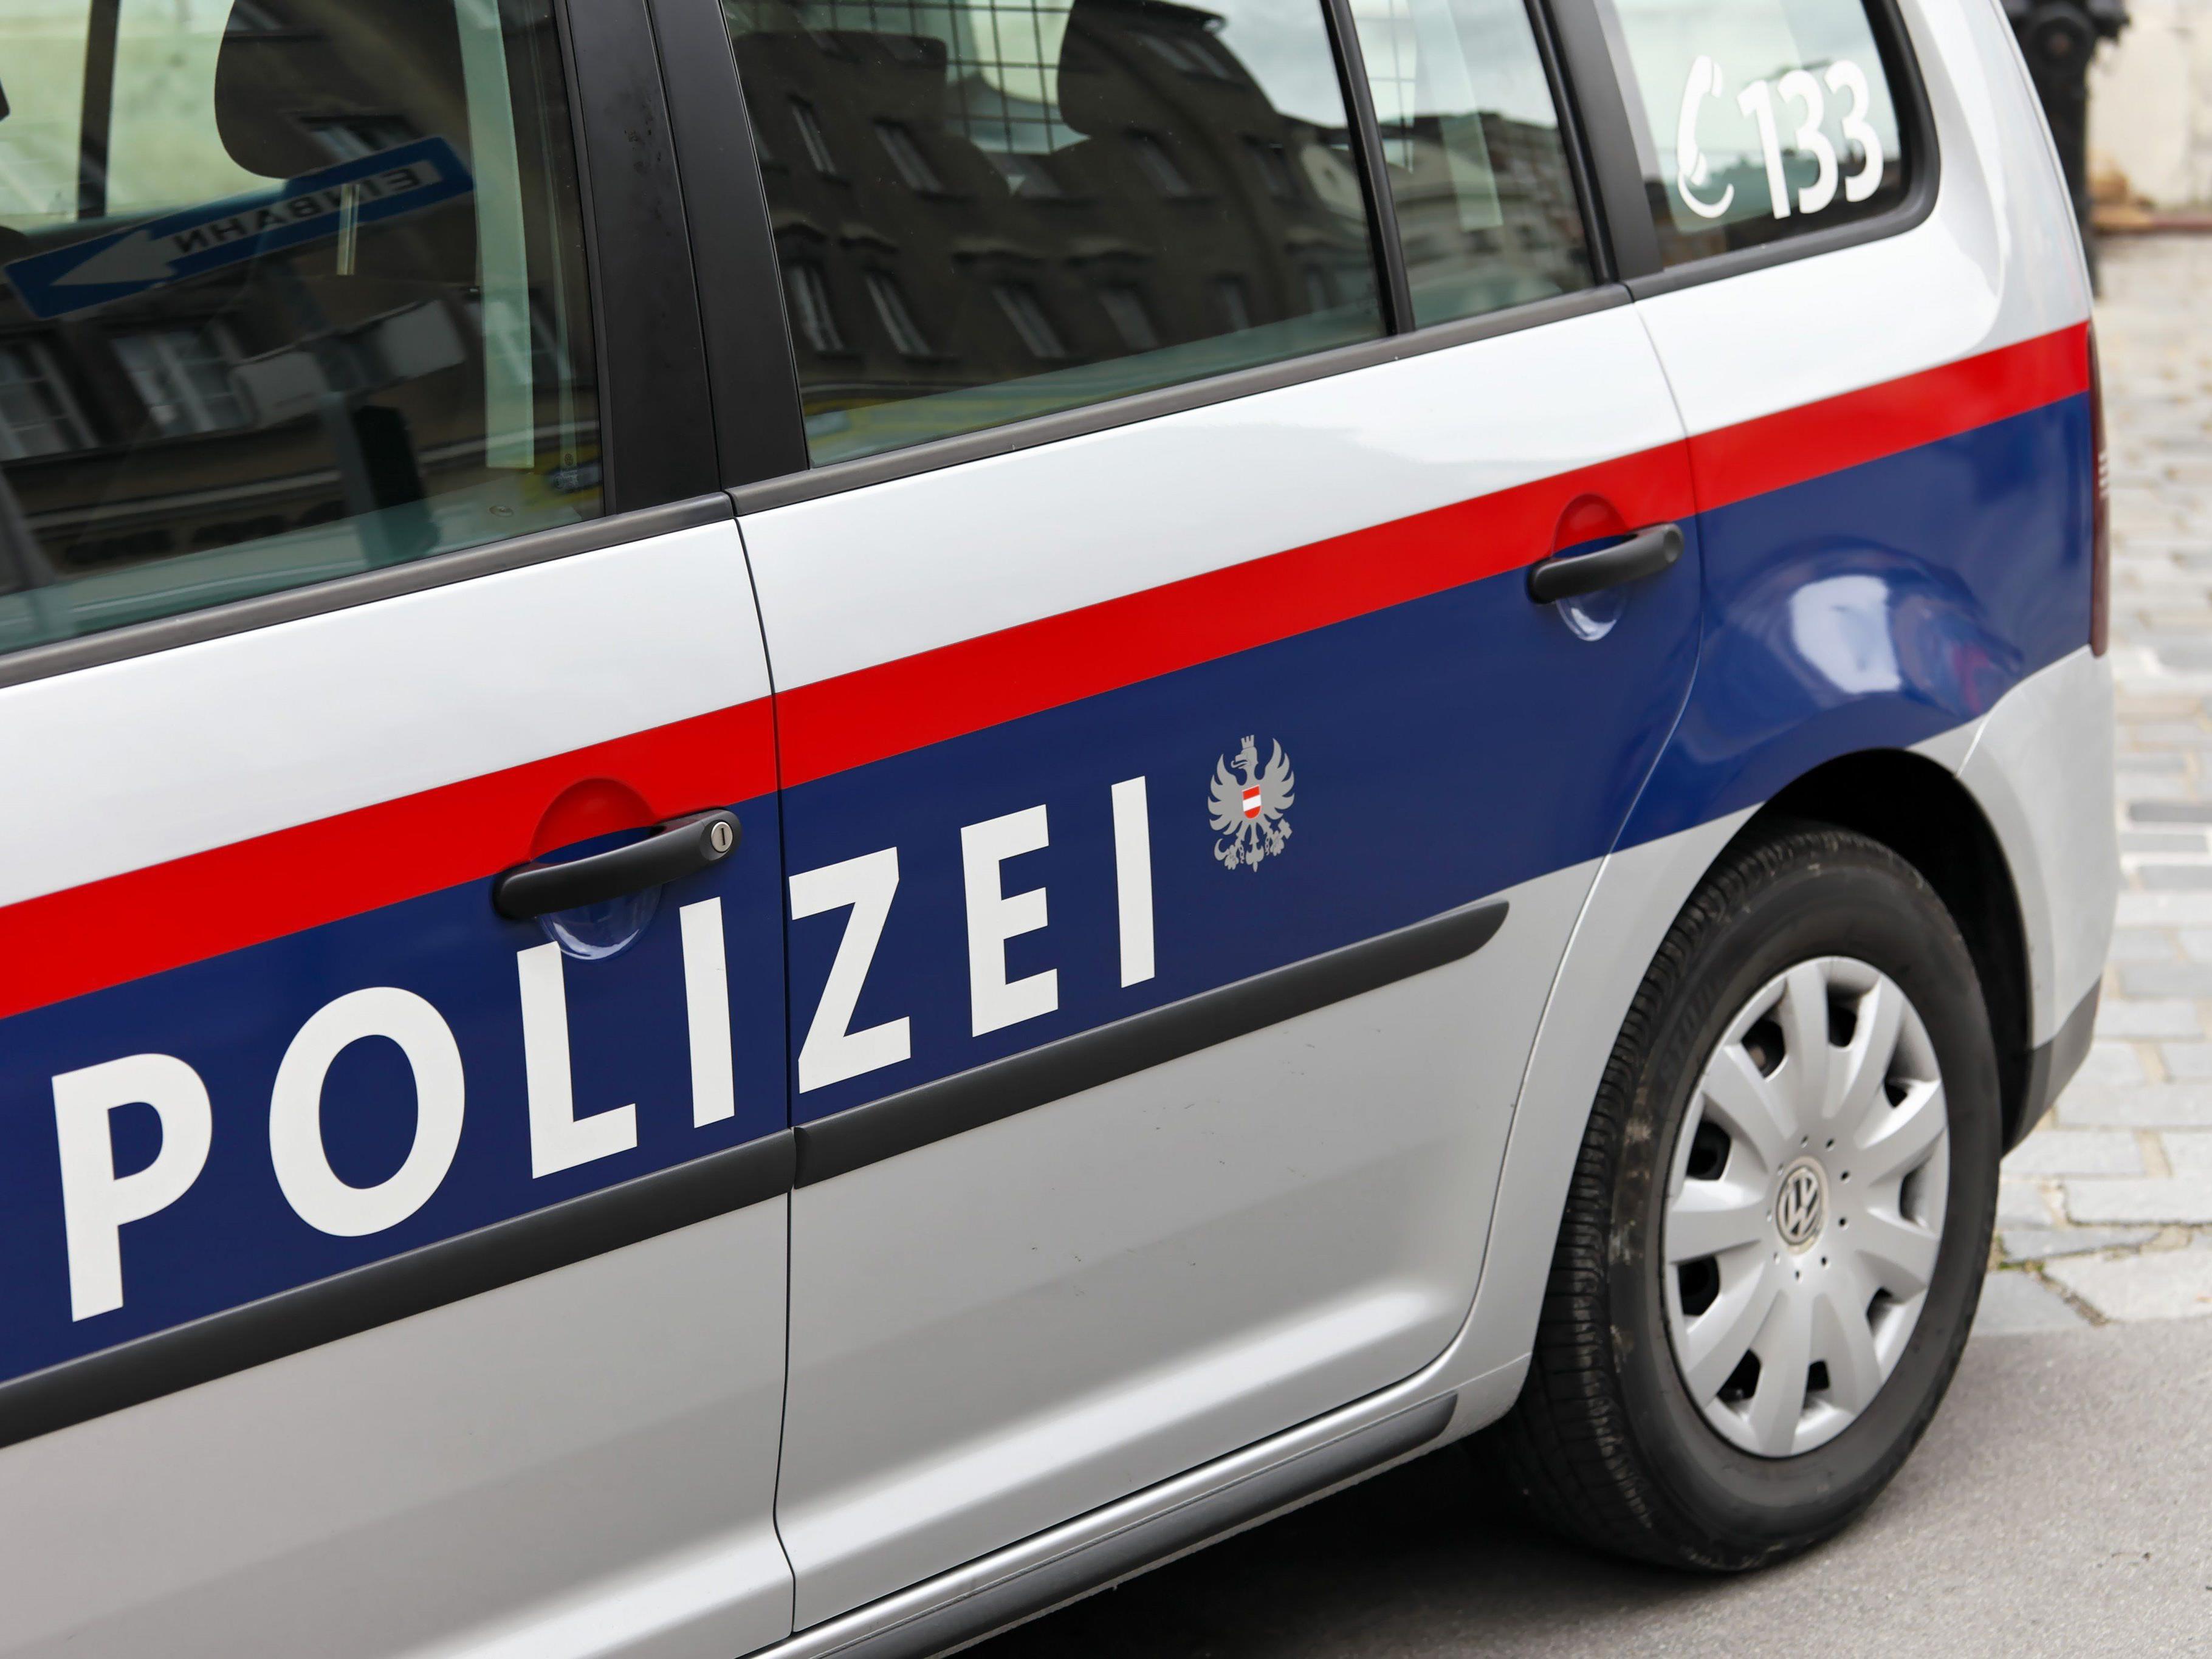 43-Jähriger in Götzis wurde von Einbrecher angegriffen und schwerst verletzt.